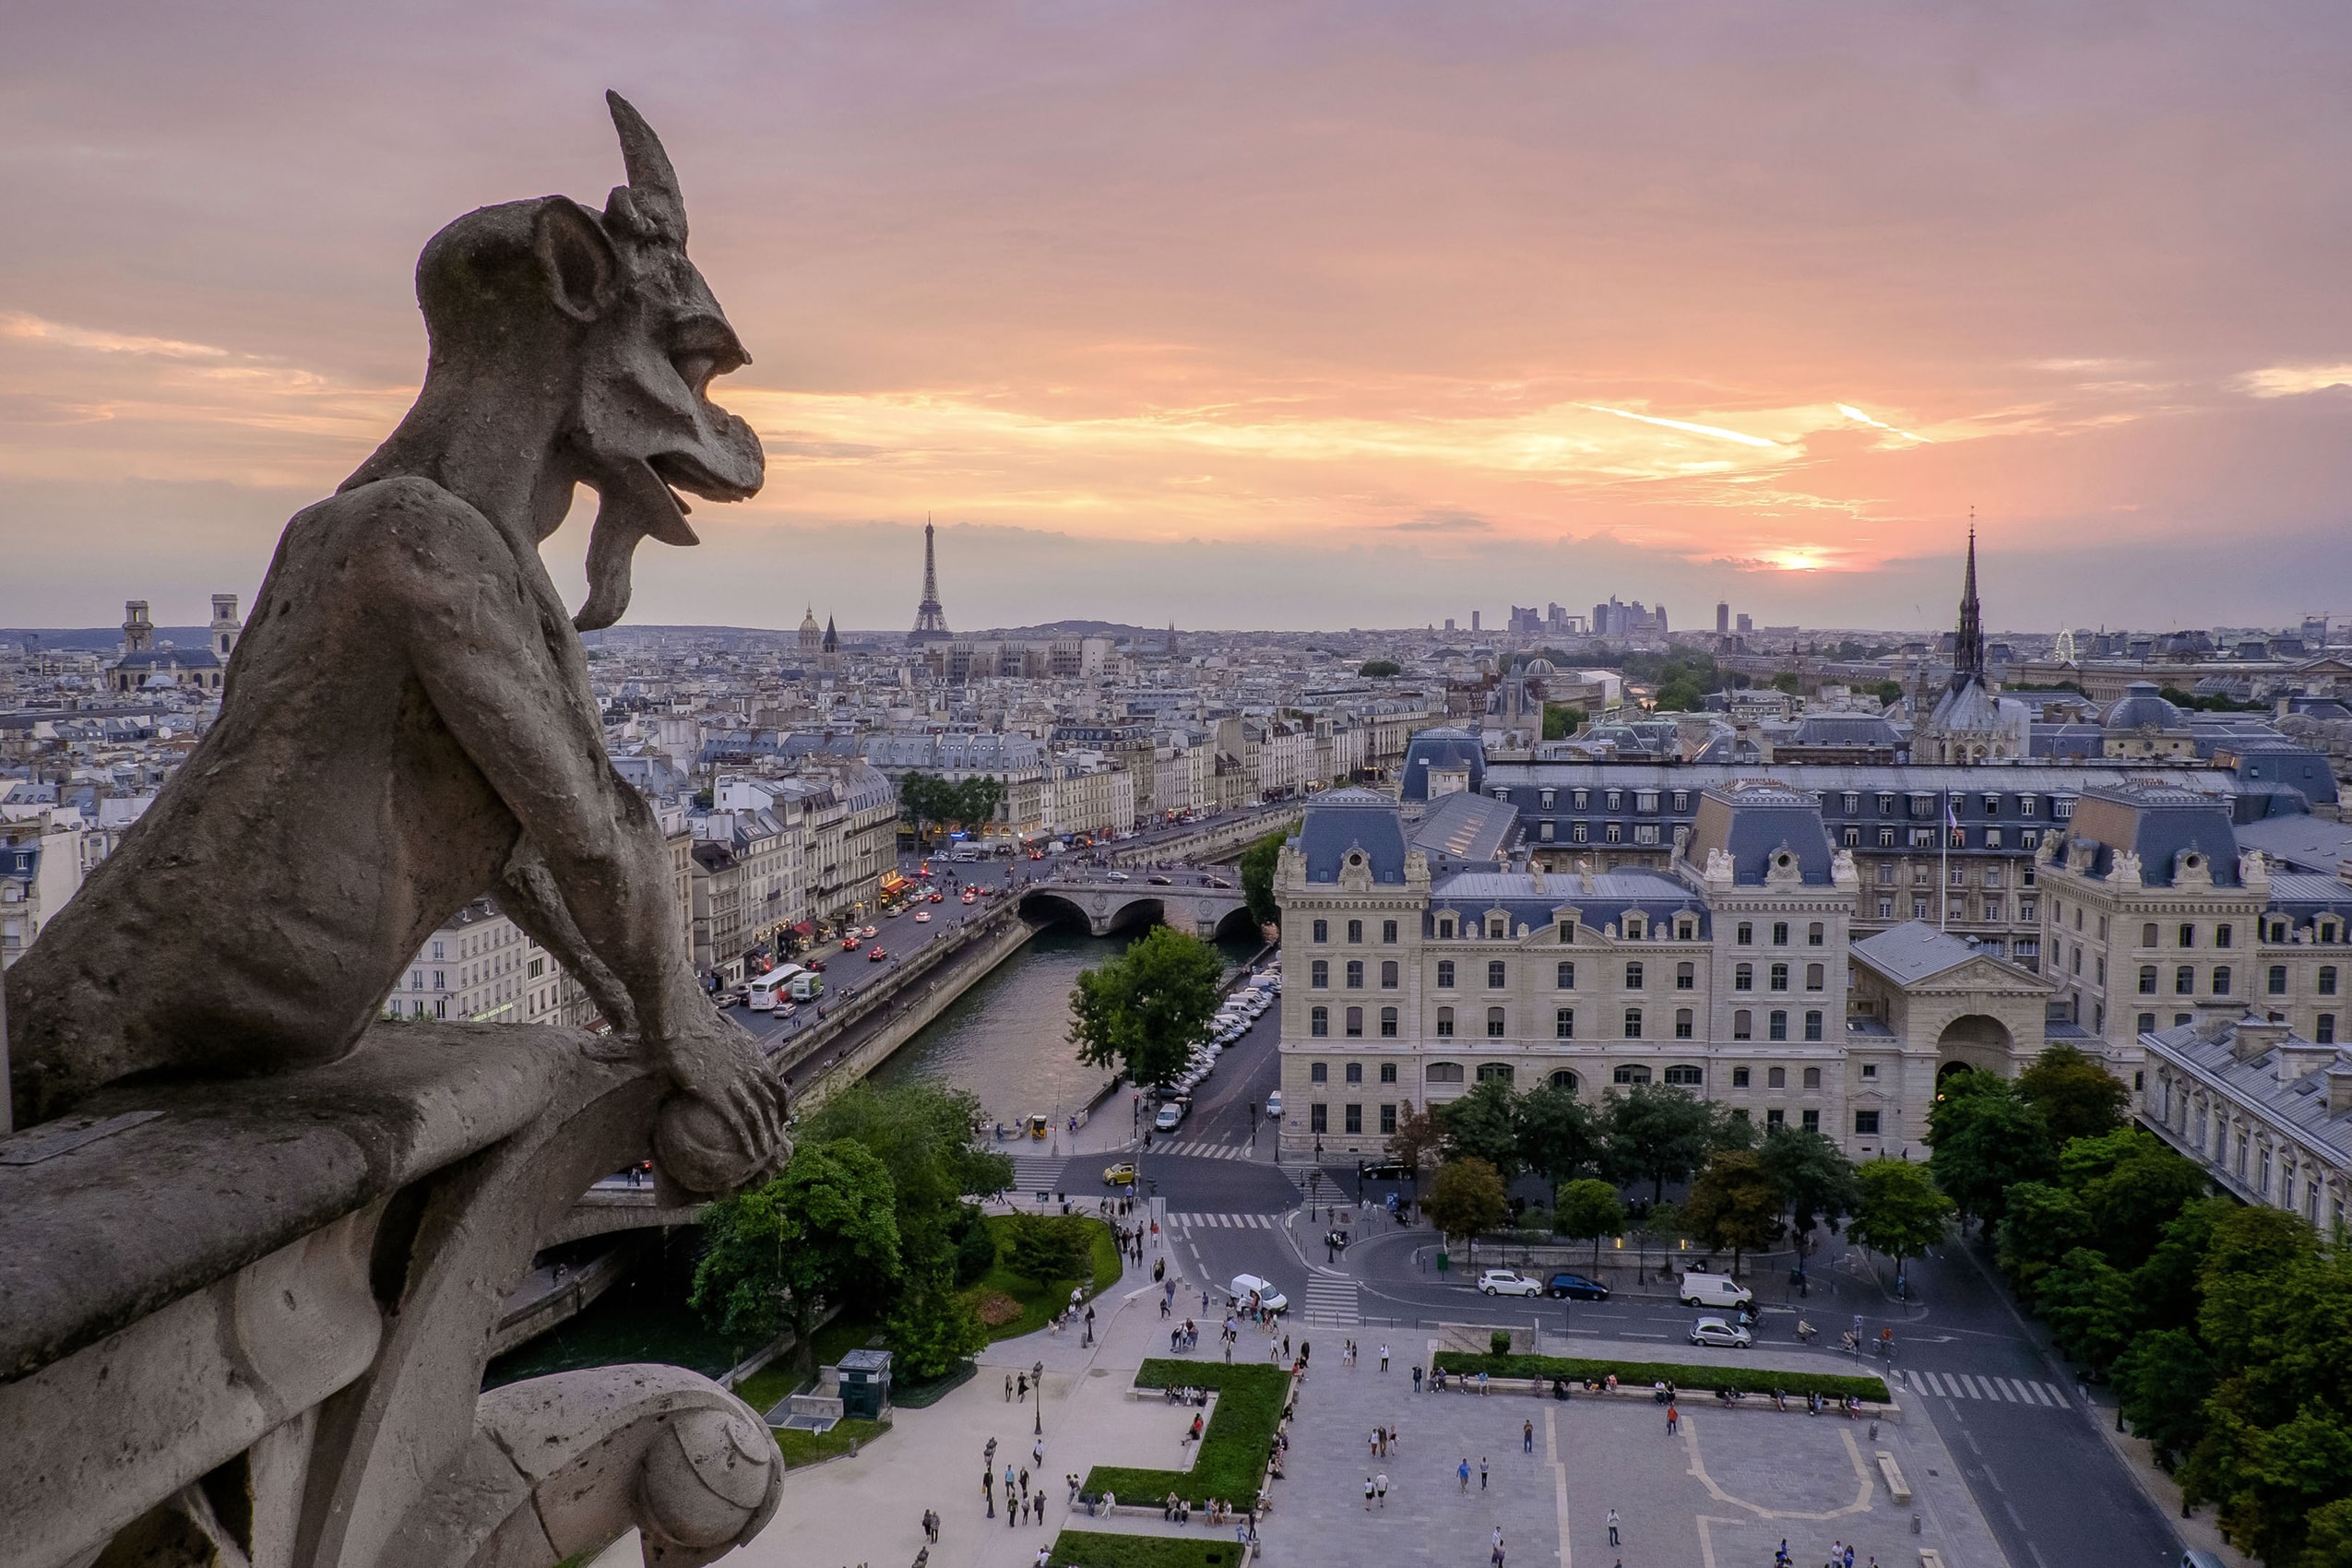 从巴黎圣母院屋顶拍摄的一张照片显示了一只滴水嘴兽